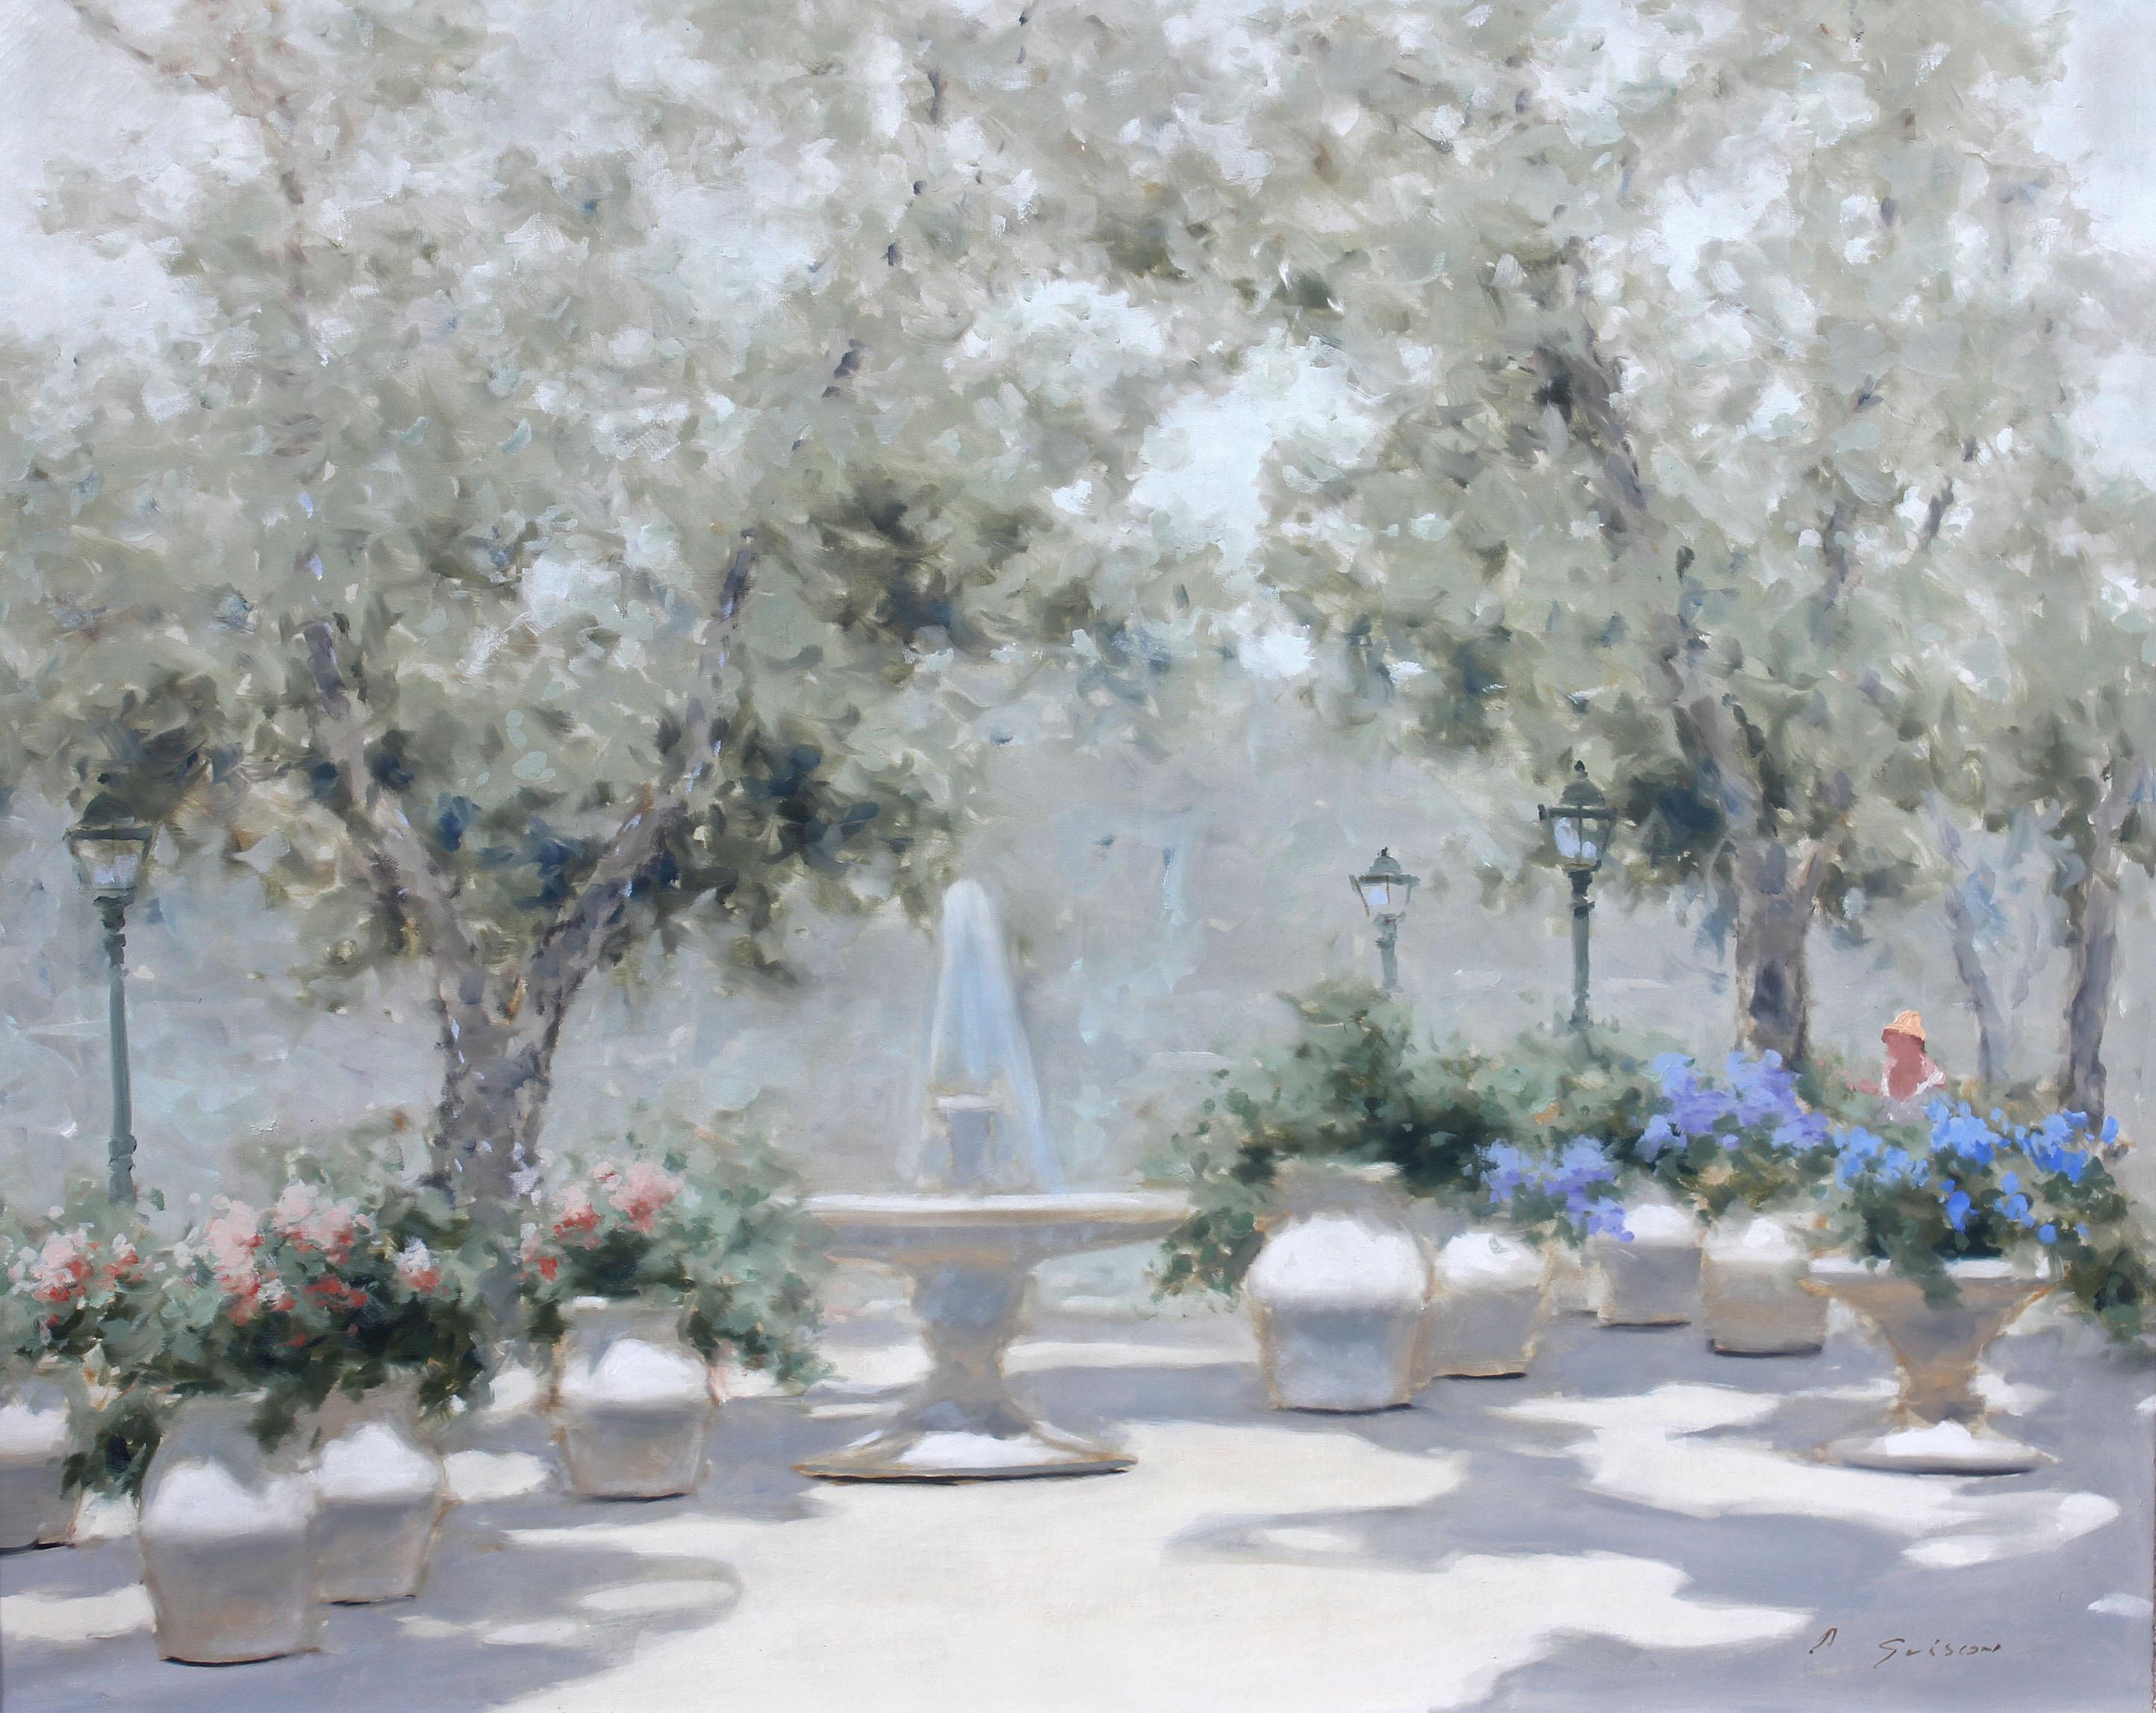 Sonnige Parkszene, ein impressionistisches Gemälde von Andre Gisson (1921-2003). Sanfte Farben und helles Licht sind die Markenzeichen von Gissons Arbeit. Obwohl der in Amerika geborene Andre Gisson am besten für seinen französischen